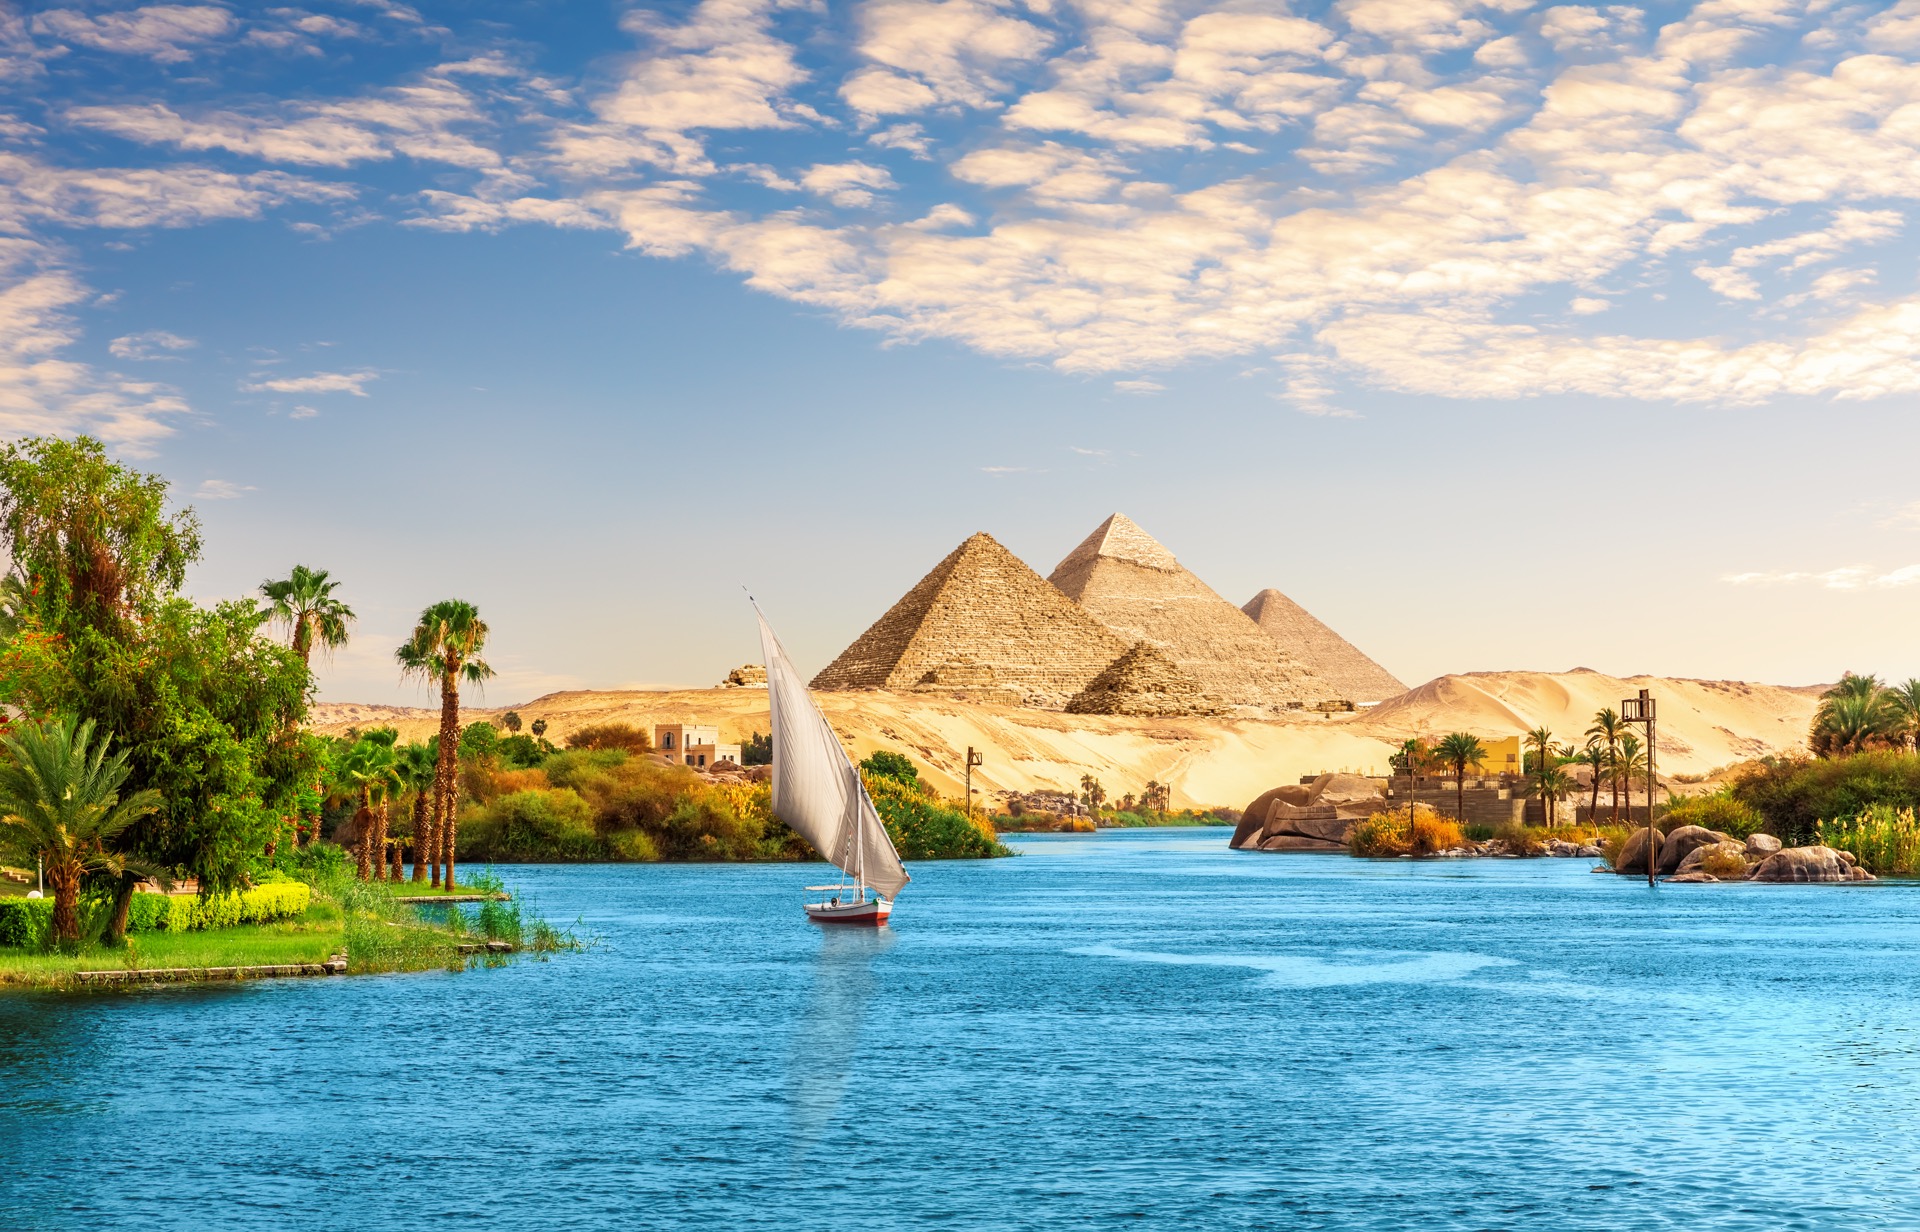 La ville ancienne de Berenike était un port important de l’Égypte ancienne, offrant un relais entre le Nil et la mer Rouge. © AlexAnton, Adobe Stock